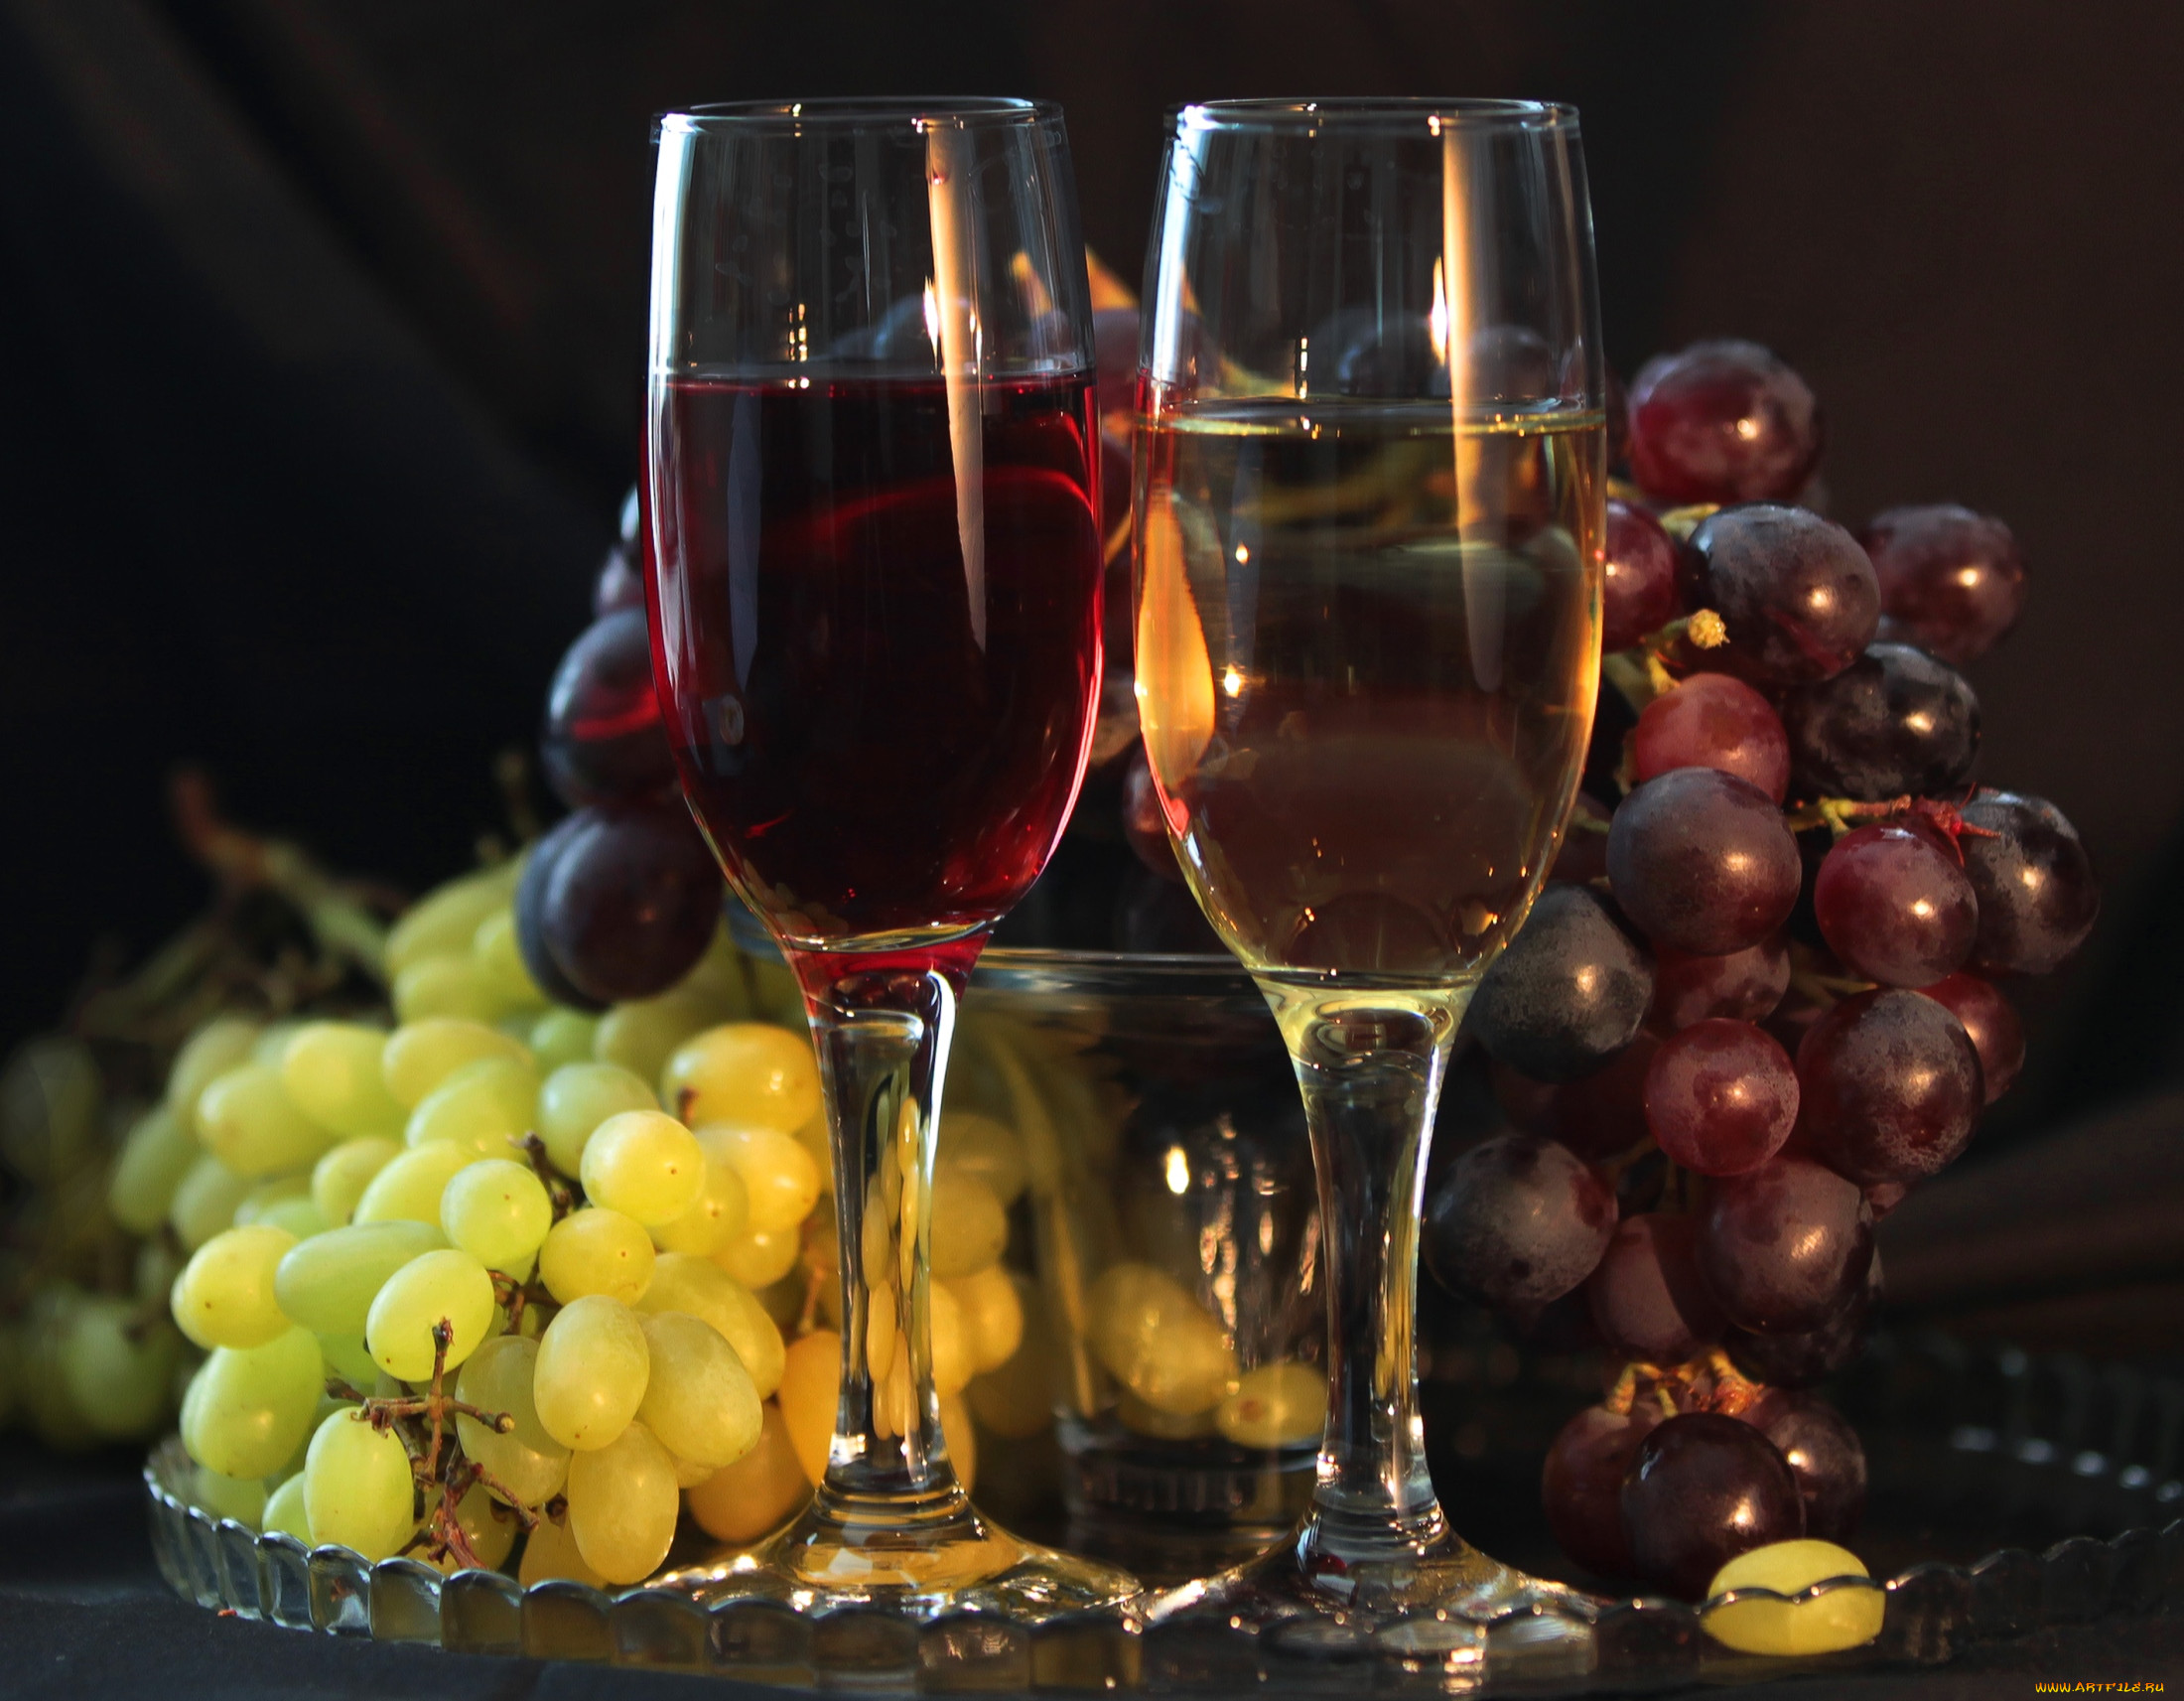 Картинку вине. Бокал с вином. Шампанское и виноград. Вино бокал виноград. Красивый фужер с вином.